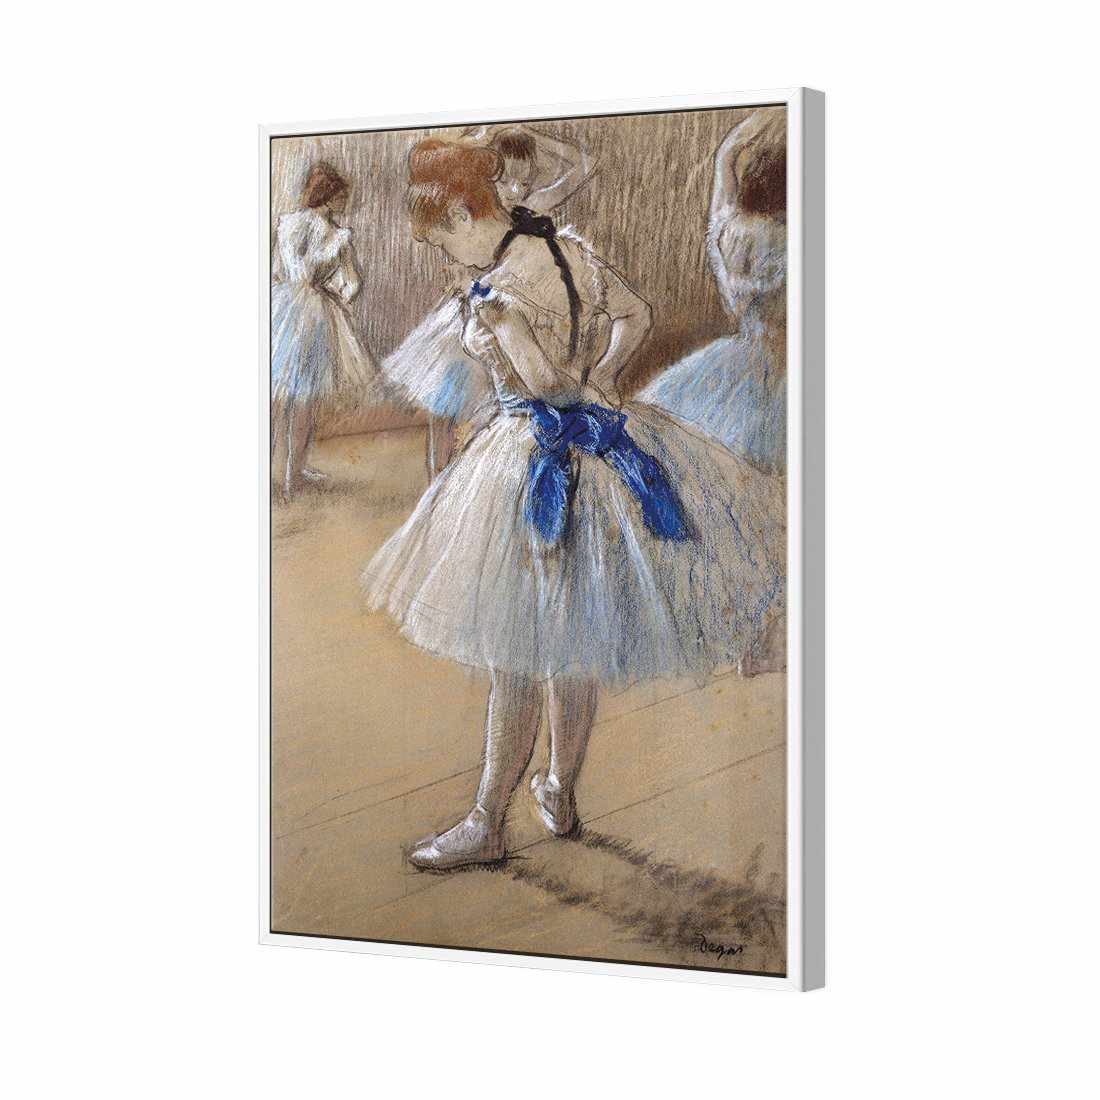 Dancer by Edgar Degas Canvas Art-Canvas-Wall Art Designs-45x30cm-Canvas - White Frame-Wall Art Designs